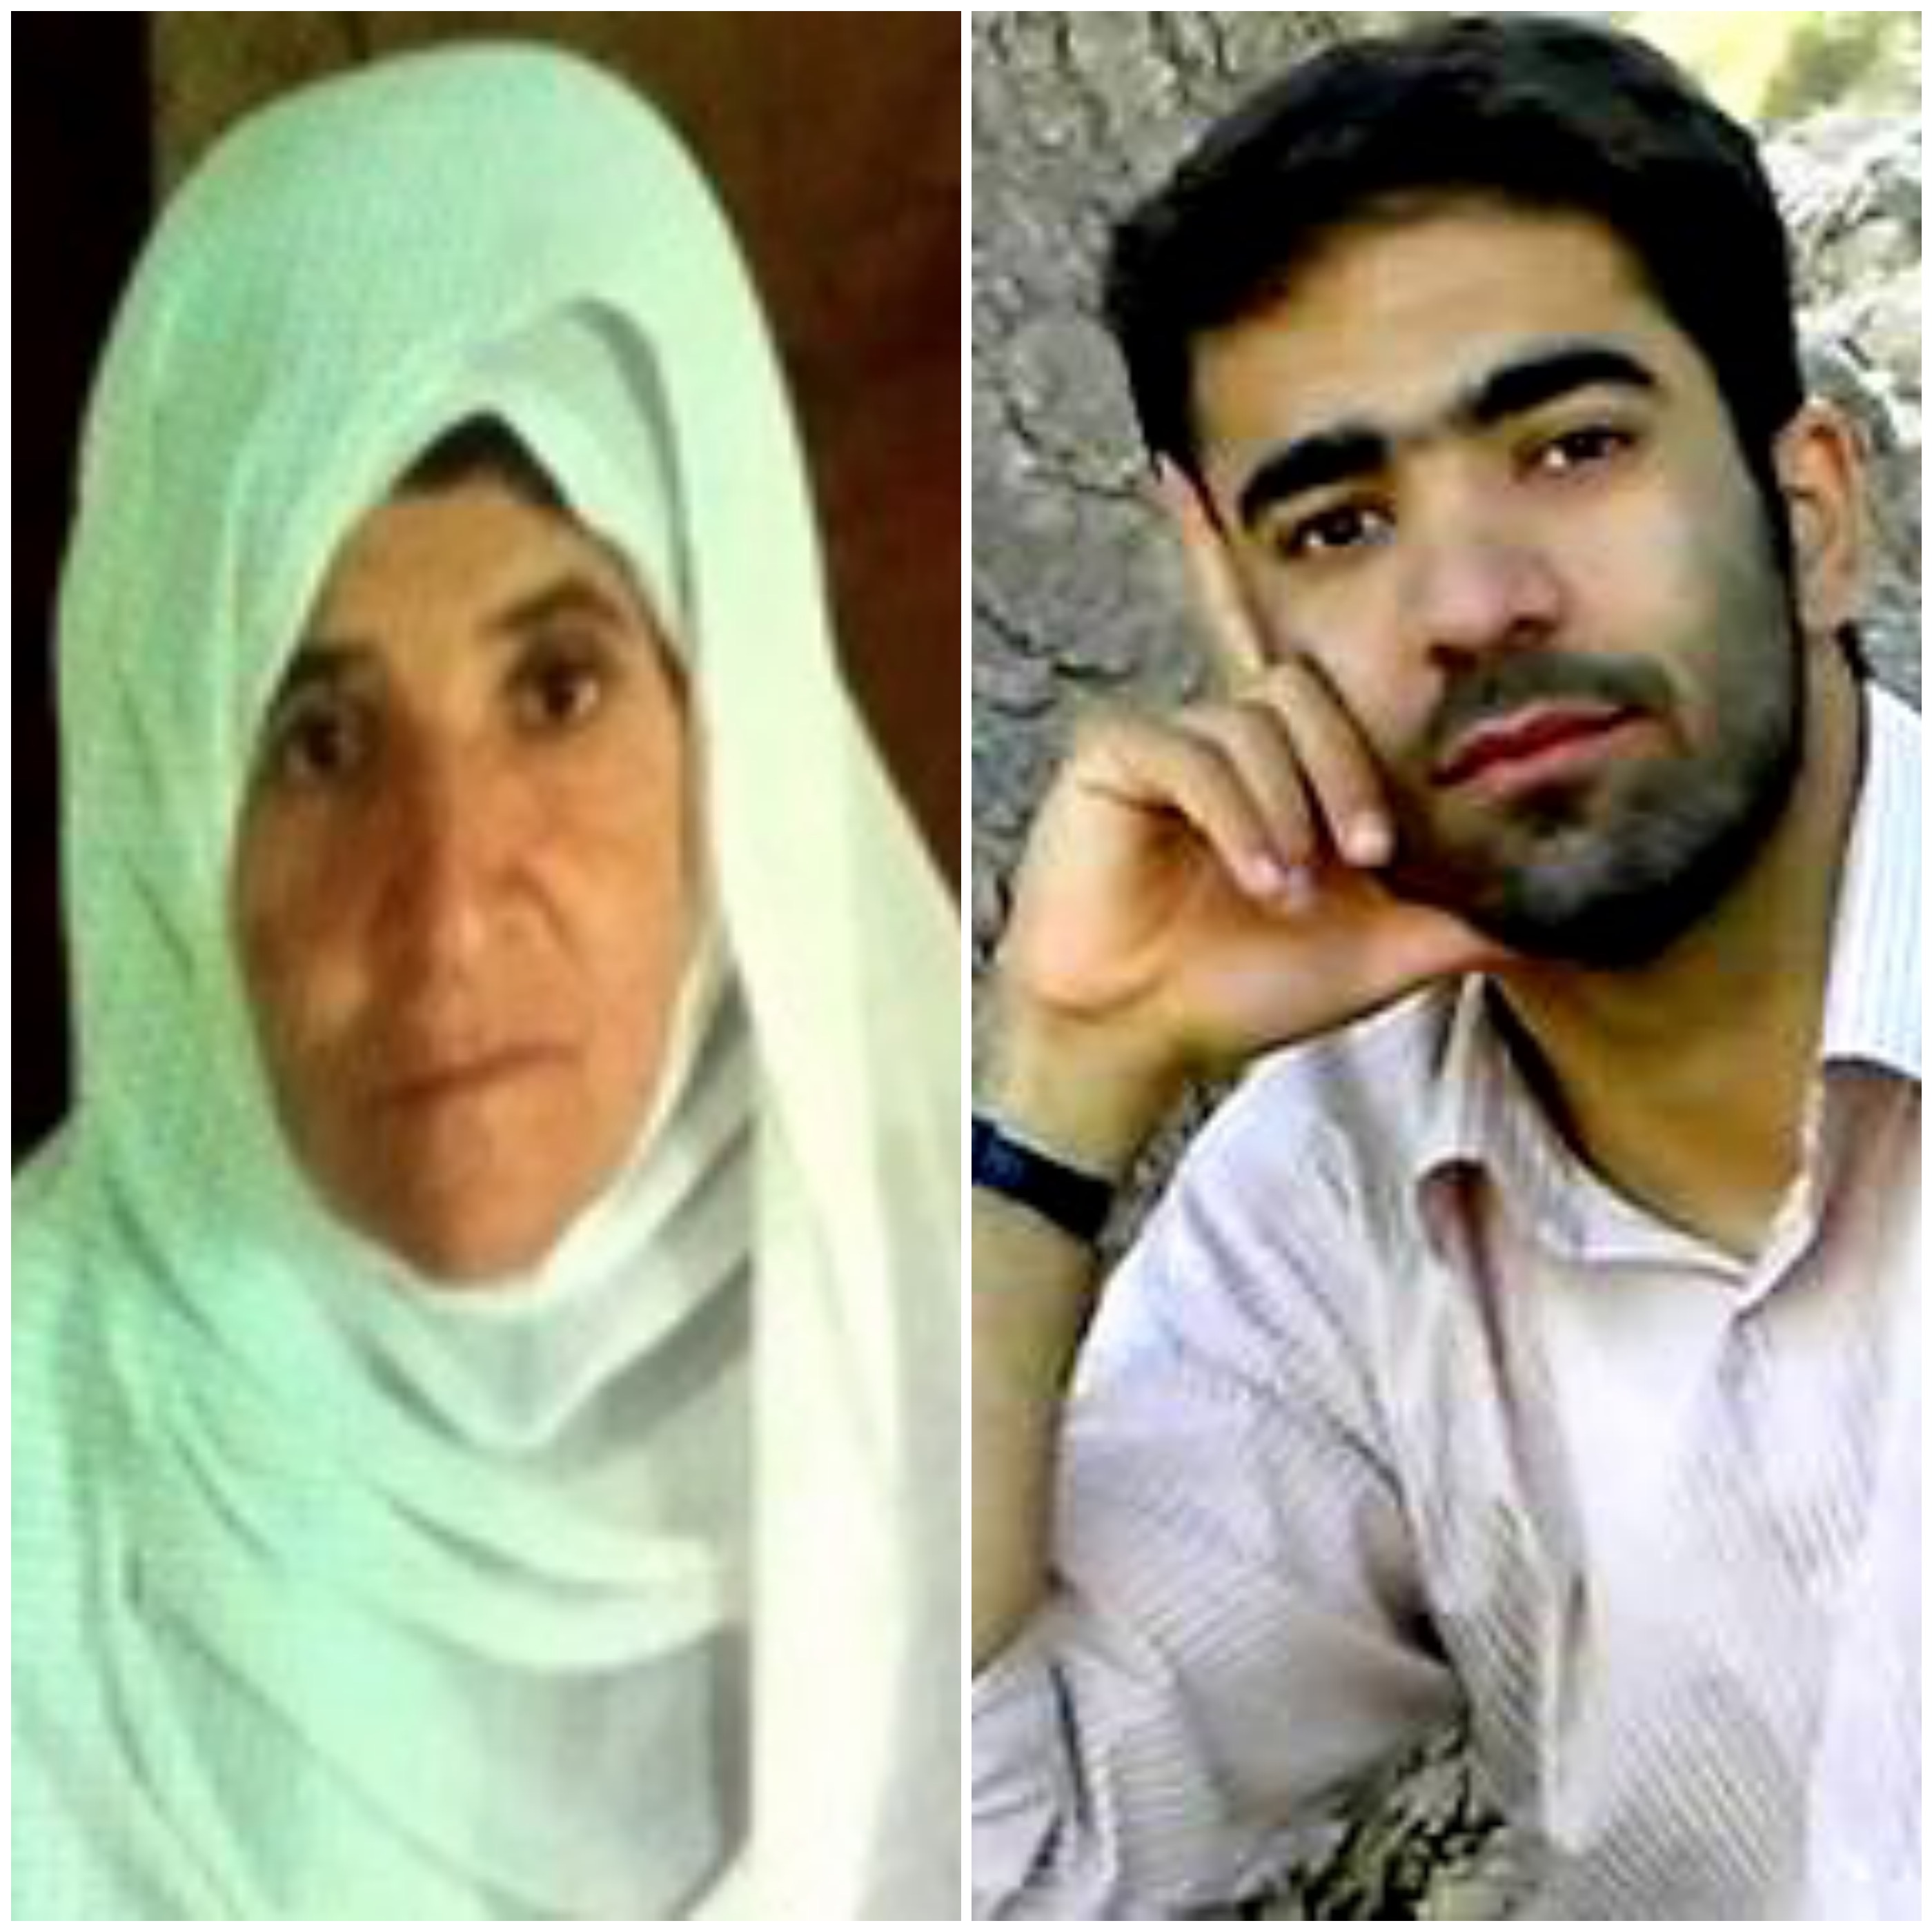 ادامه ی فشار نیروهای امنیتی بر خانواده یک فعال مذهبی کُرد